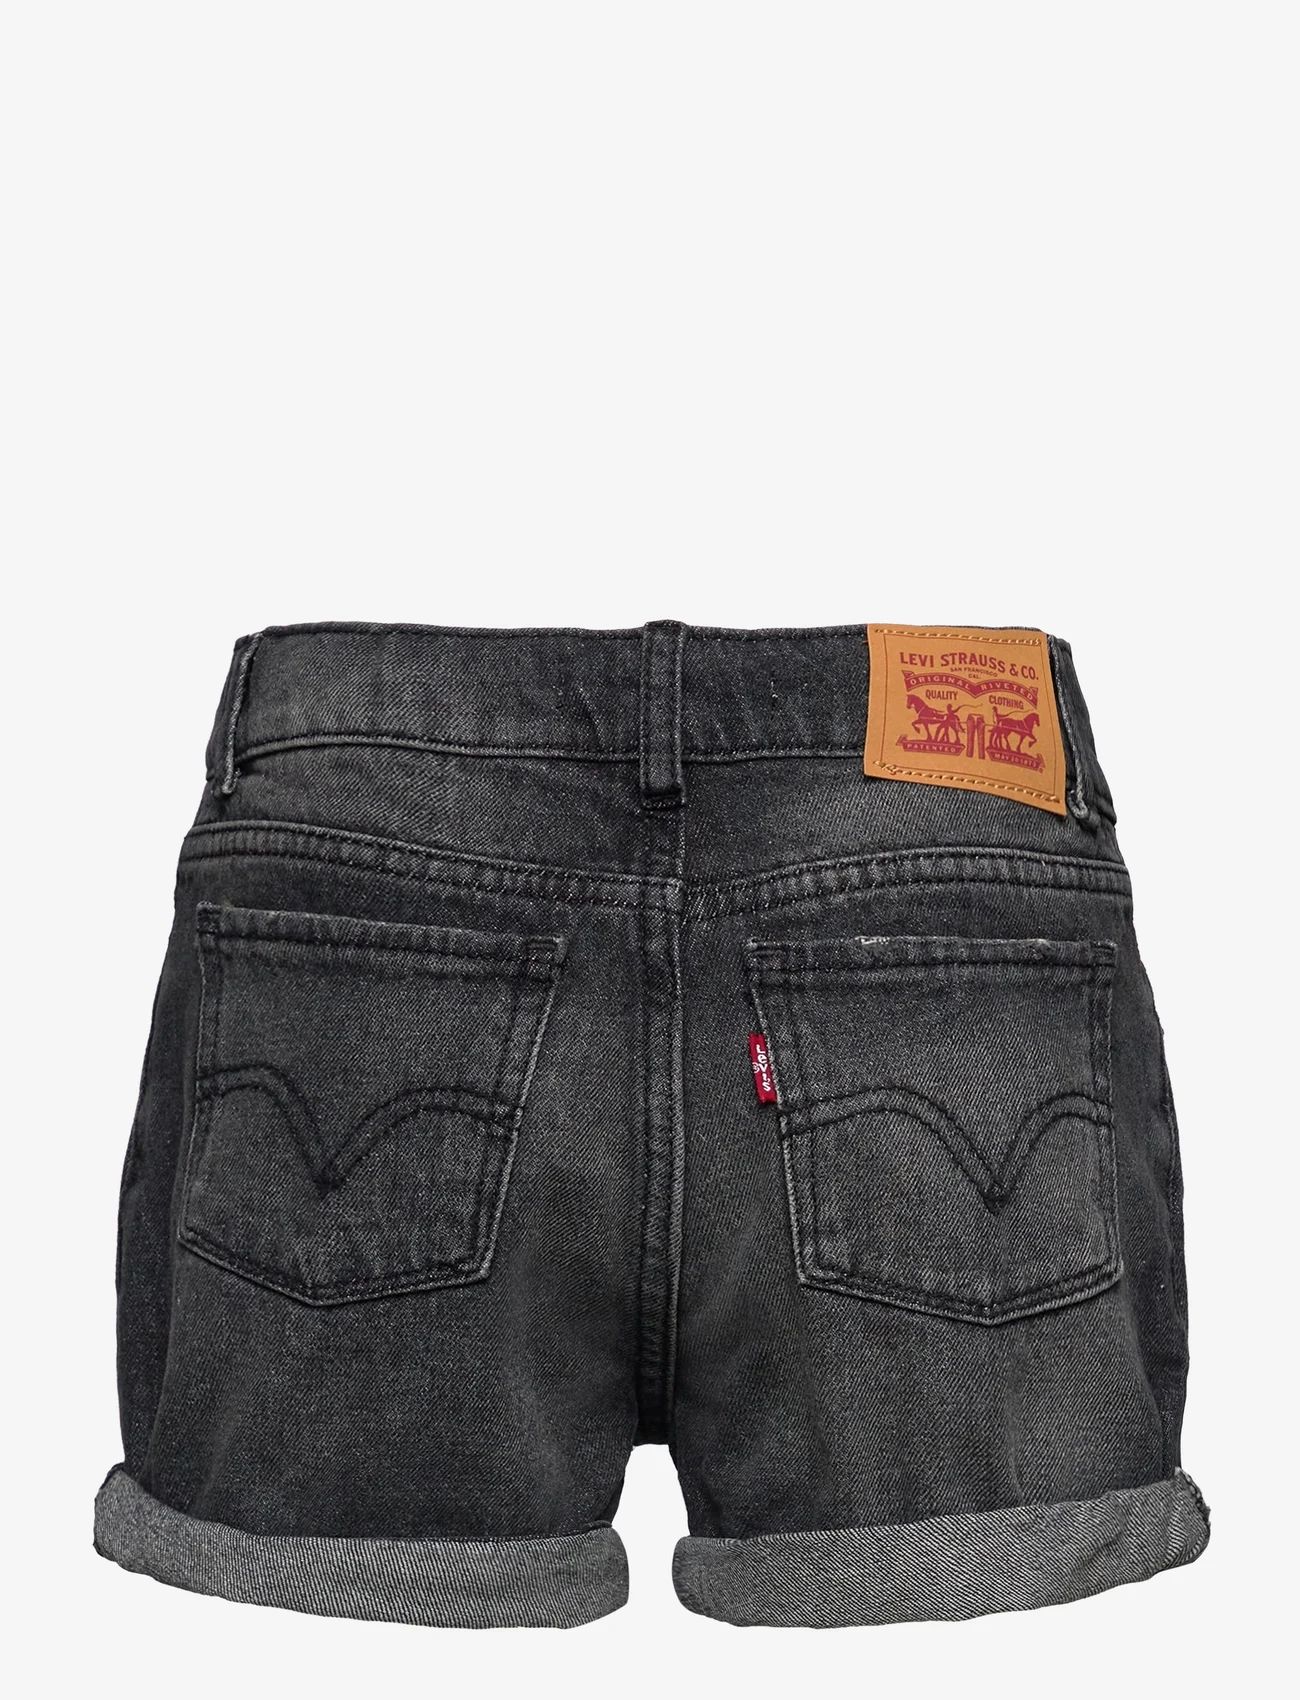 Levi's - Levi's® Mini Mom Shorts - jeansshorts - grey - 1